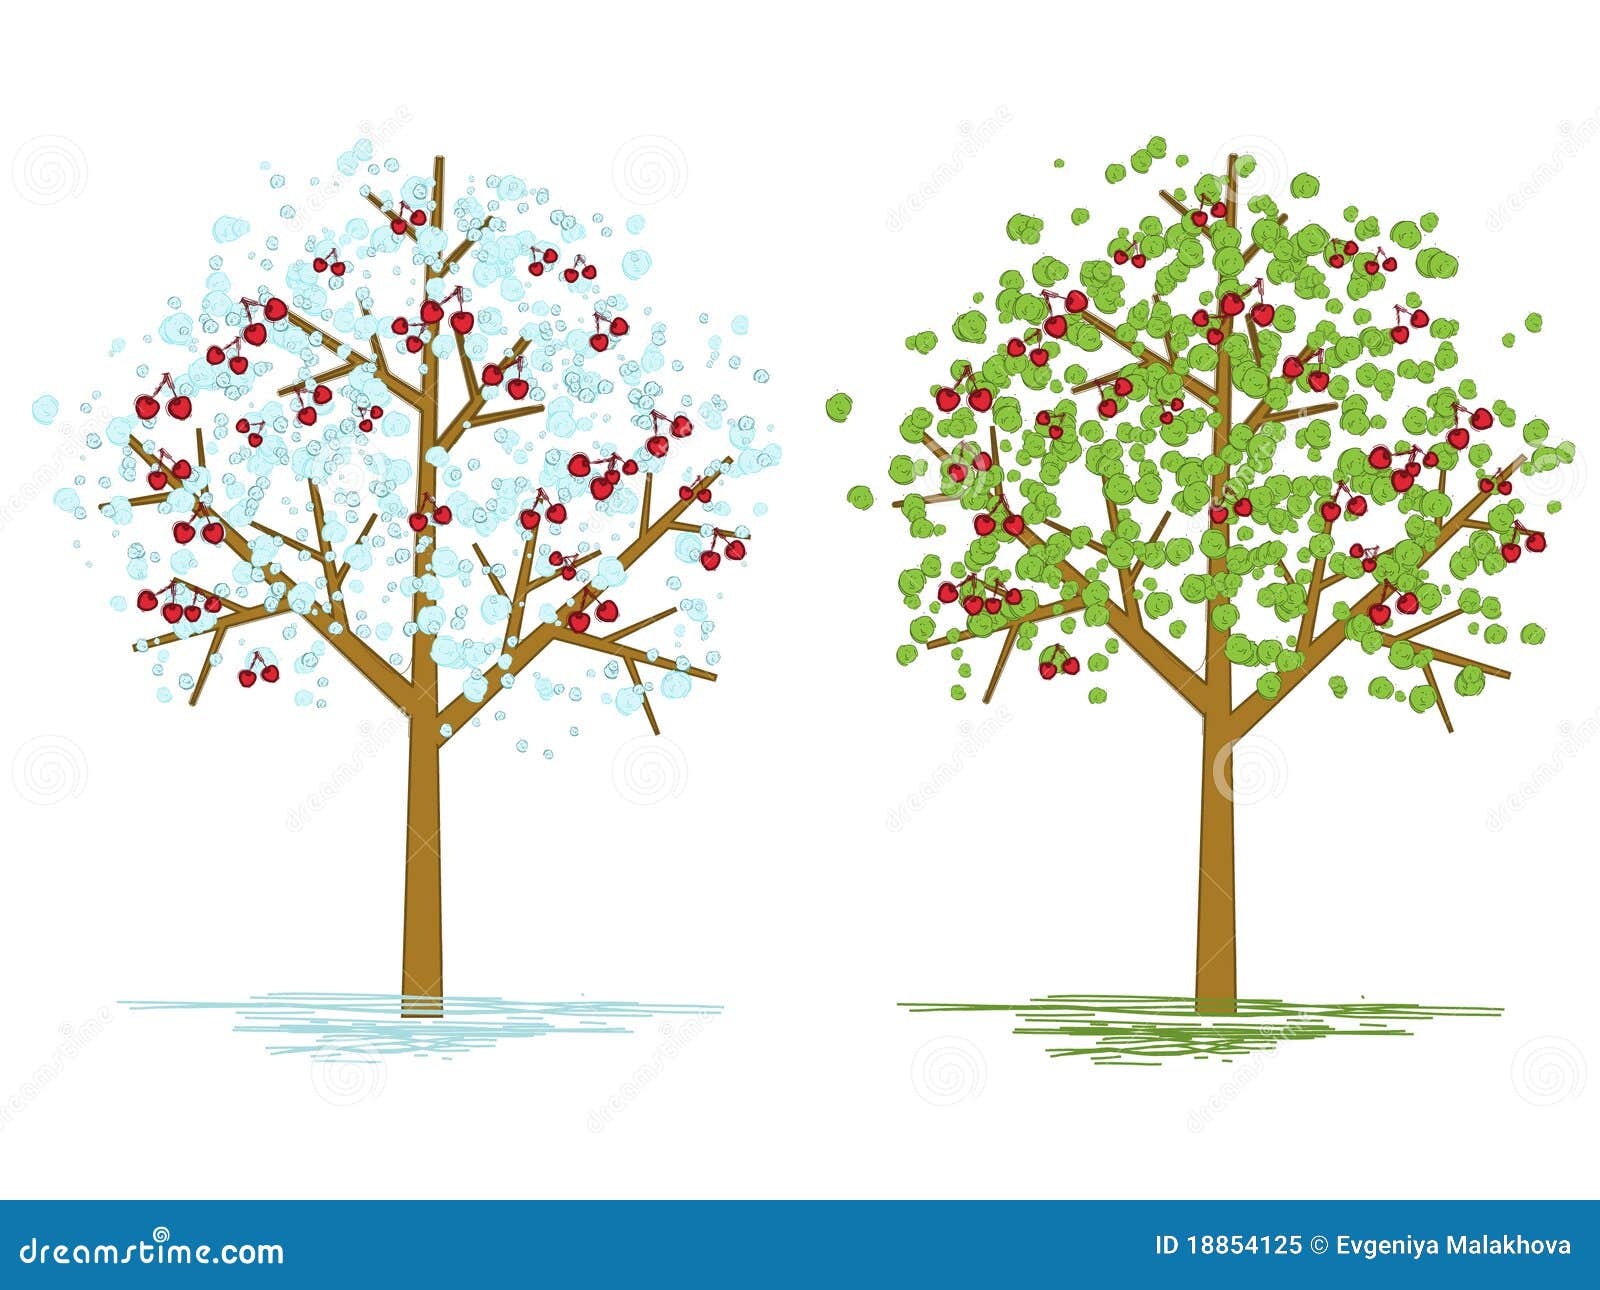 Как нарисовать дерево вишни